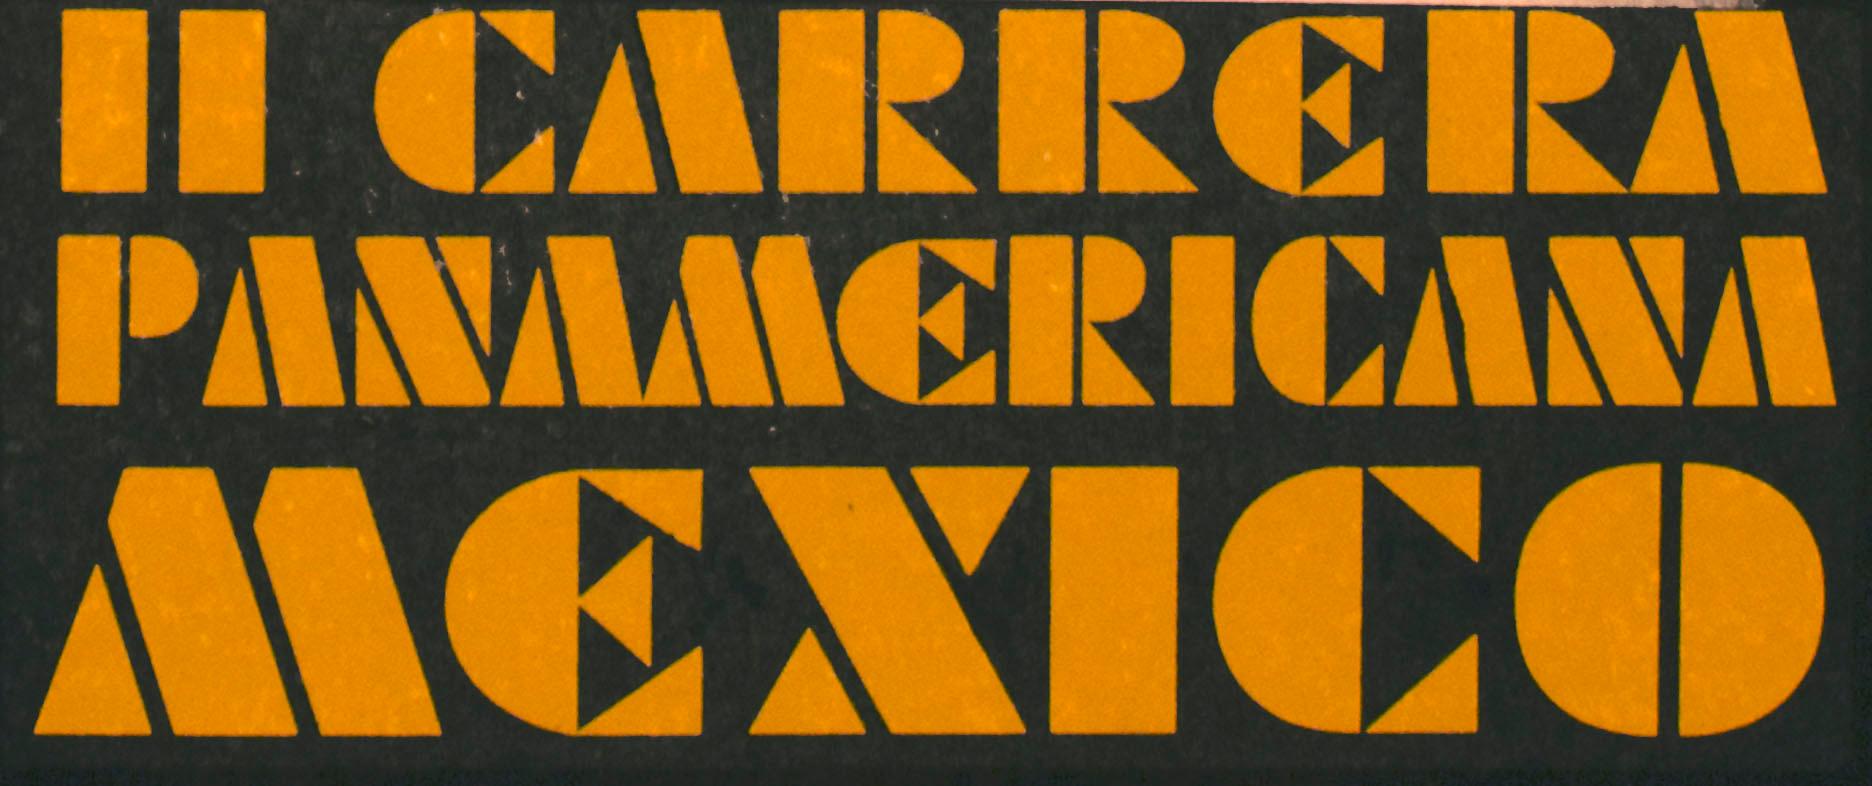 carrera panamericana poster